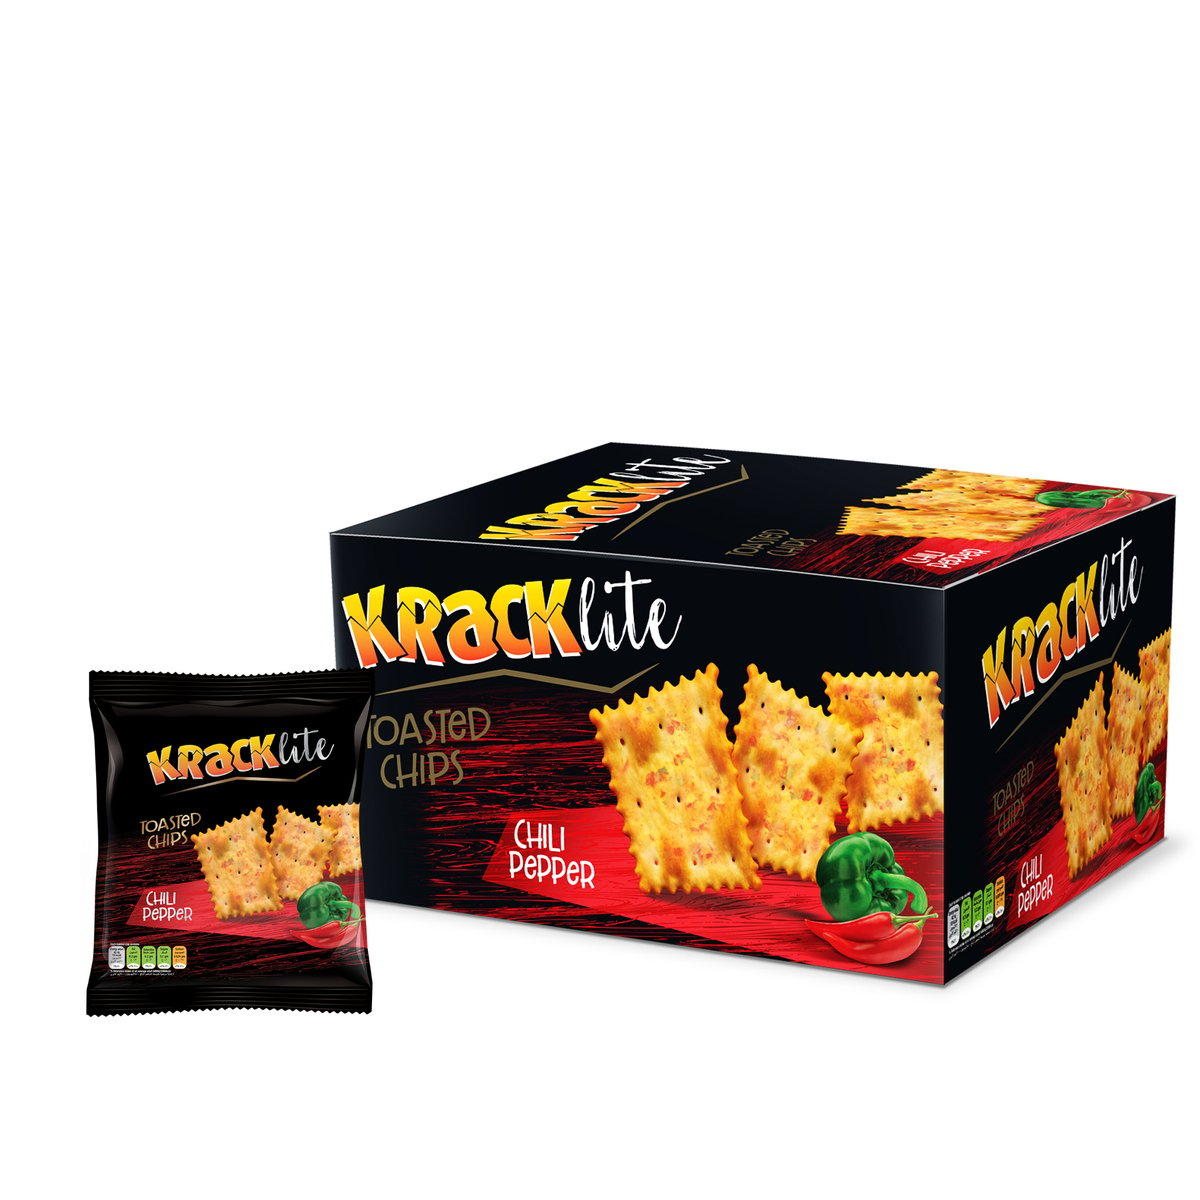 قم بشراء Kracklite Toasted Chips Chilli Pepper 12 X 26g Online At Best Price من الموقع من لولو 5477